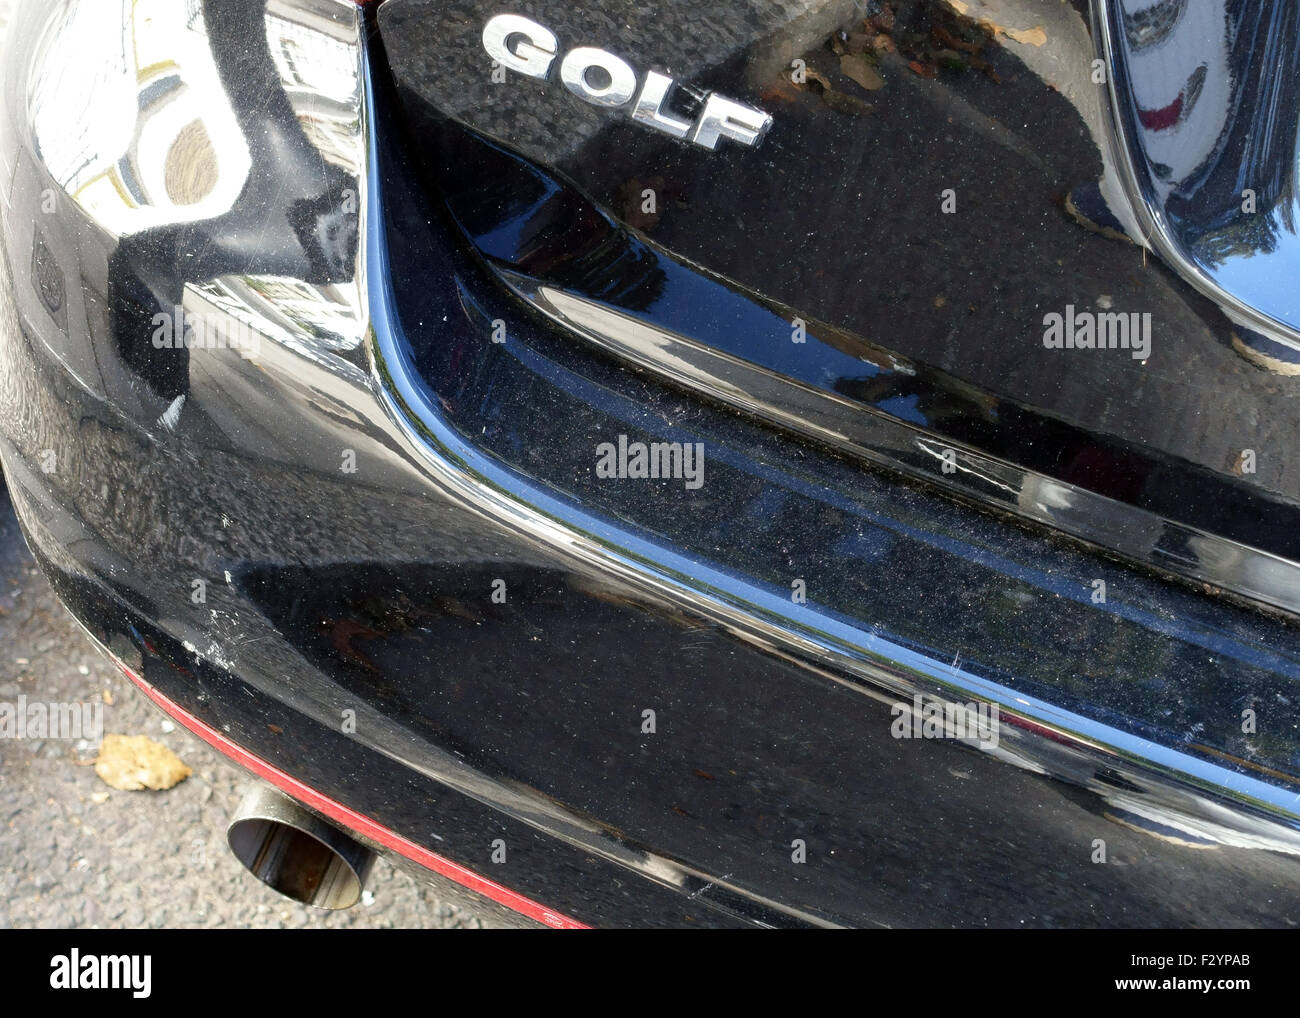 Les tuyaux d'échappement sur Volkswagen Golf voiture, Londres Banque D'Images